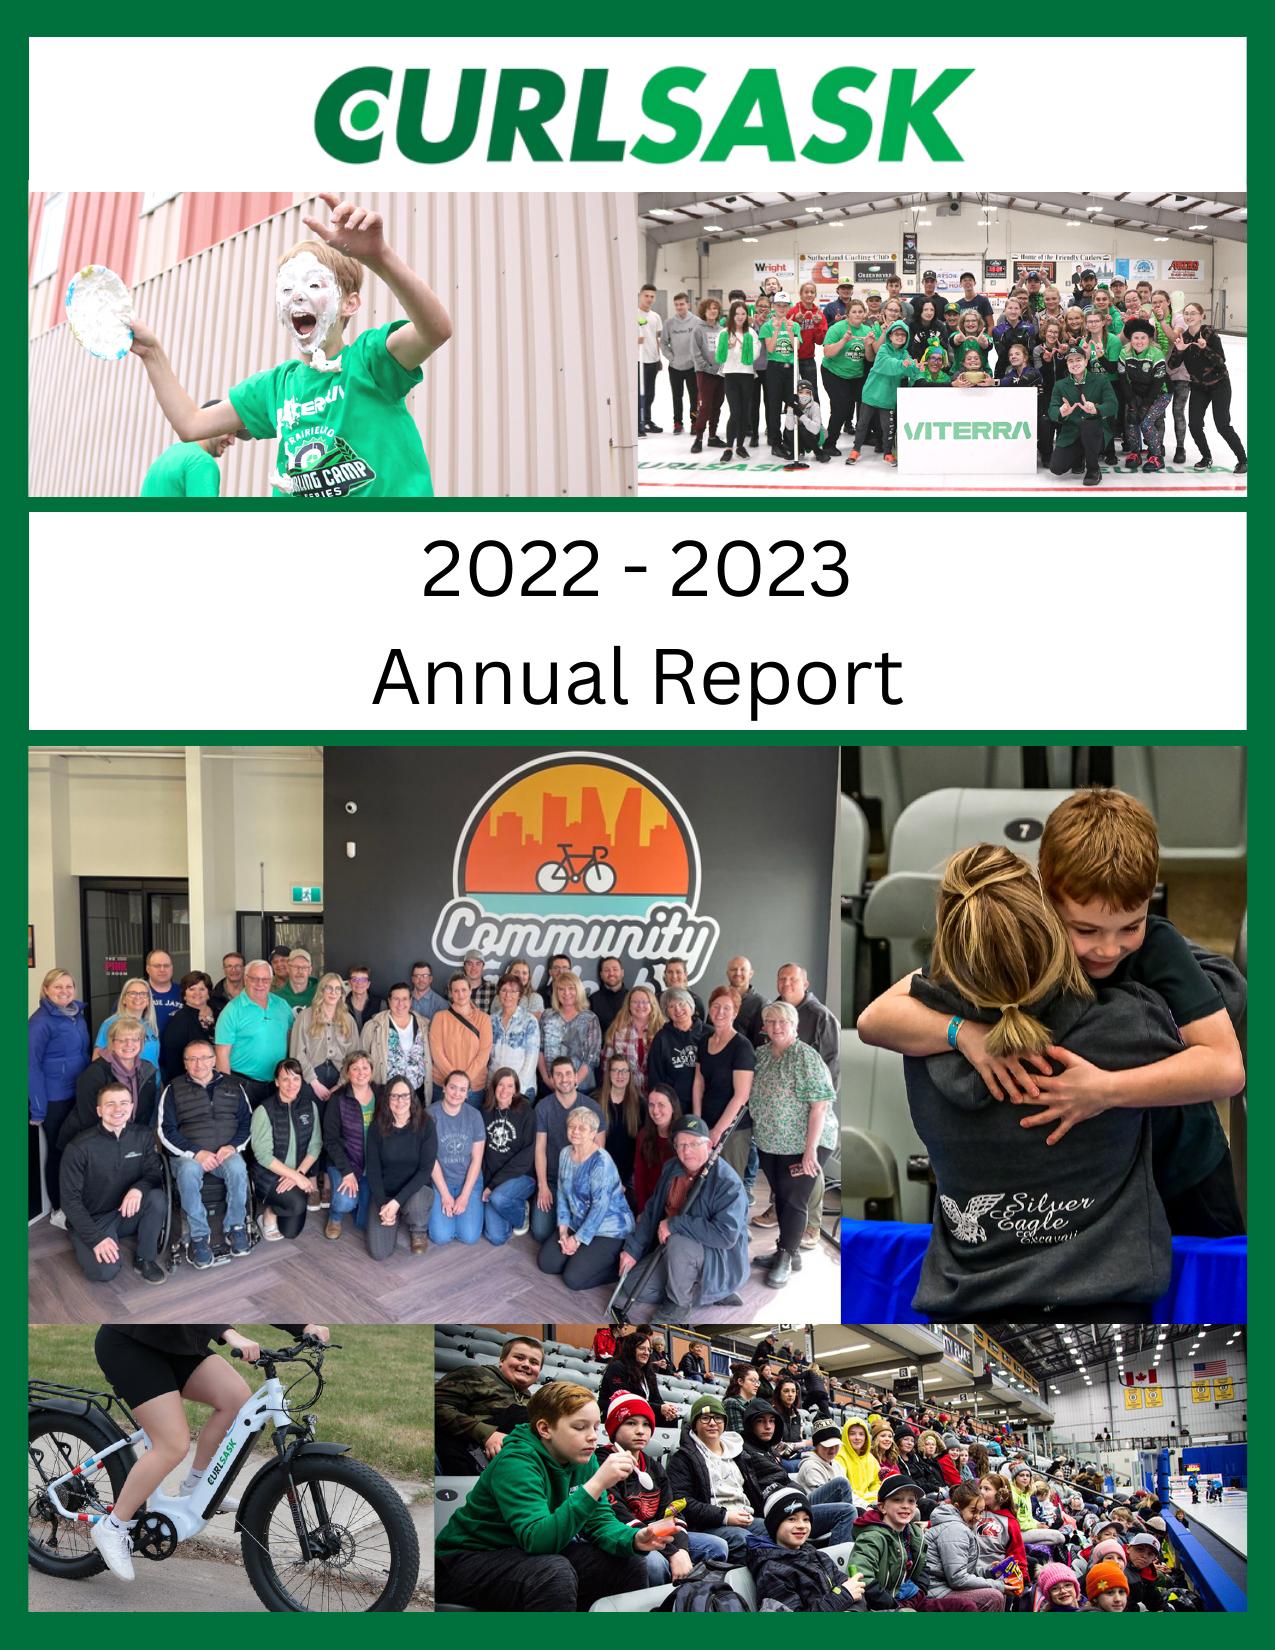 CURLSASK 2023 Annual Report